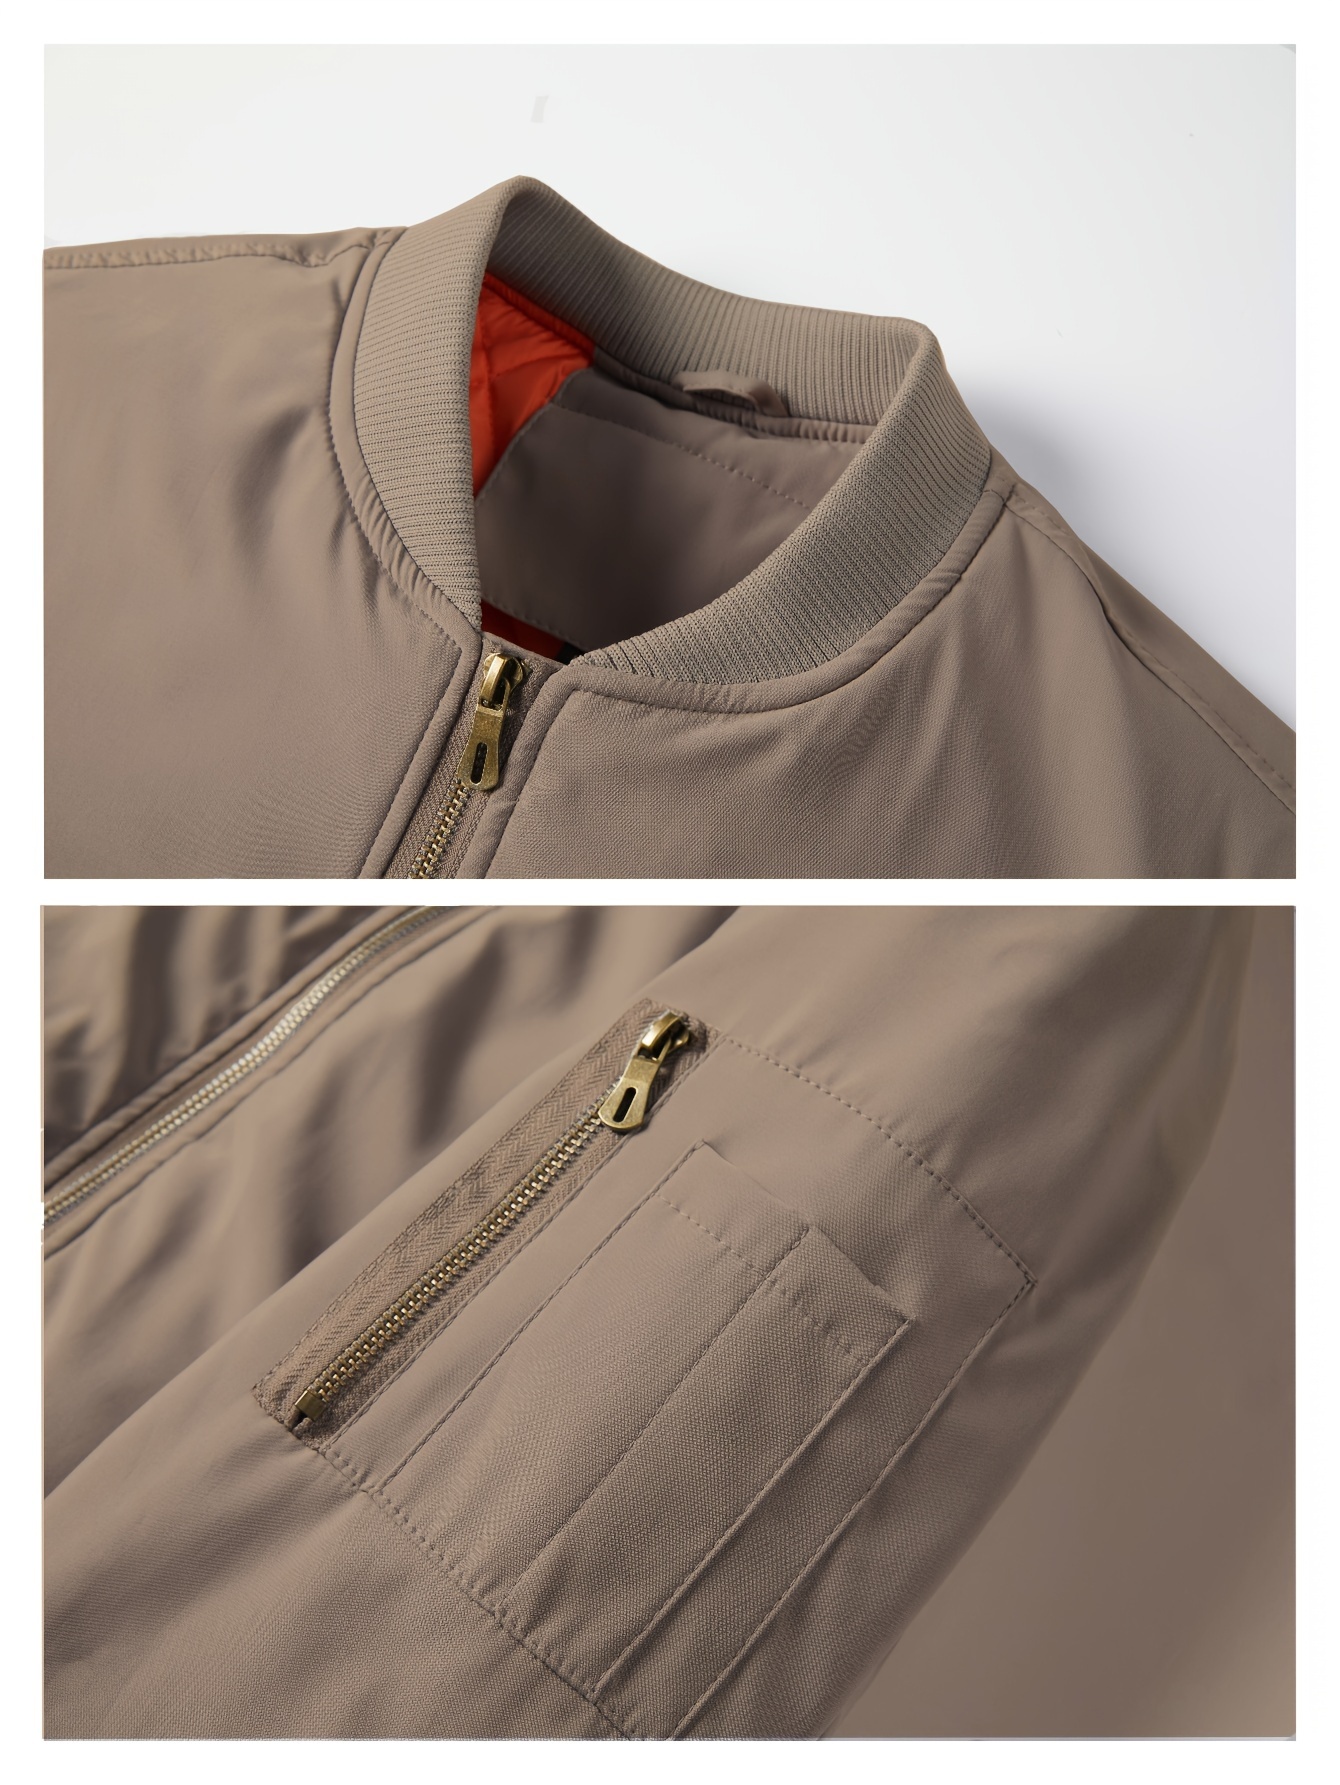 Tenemos una chaqueta clásica y multibolsillos superventas con forro  desmontable, cuello alto y capucha - Showroom